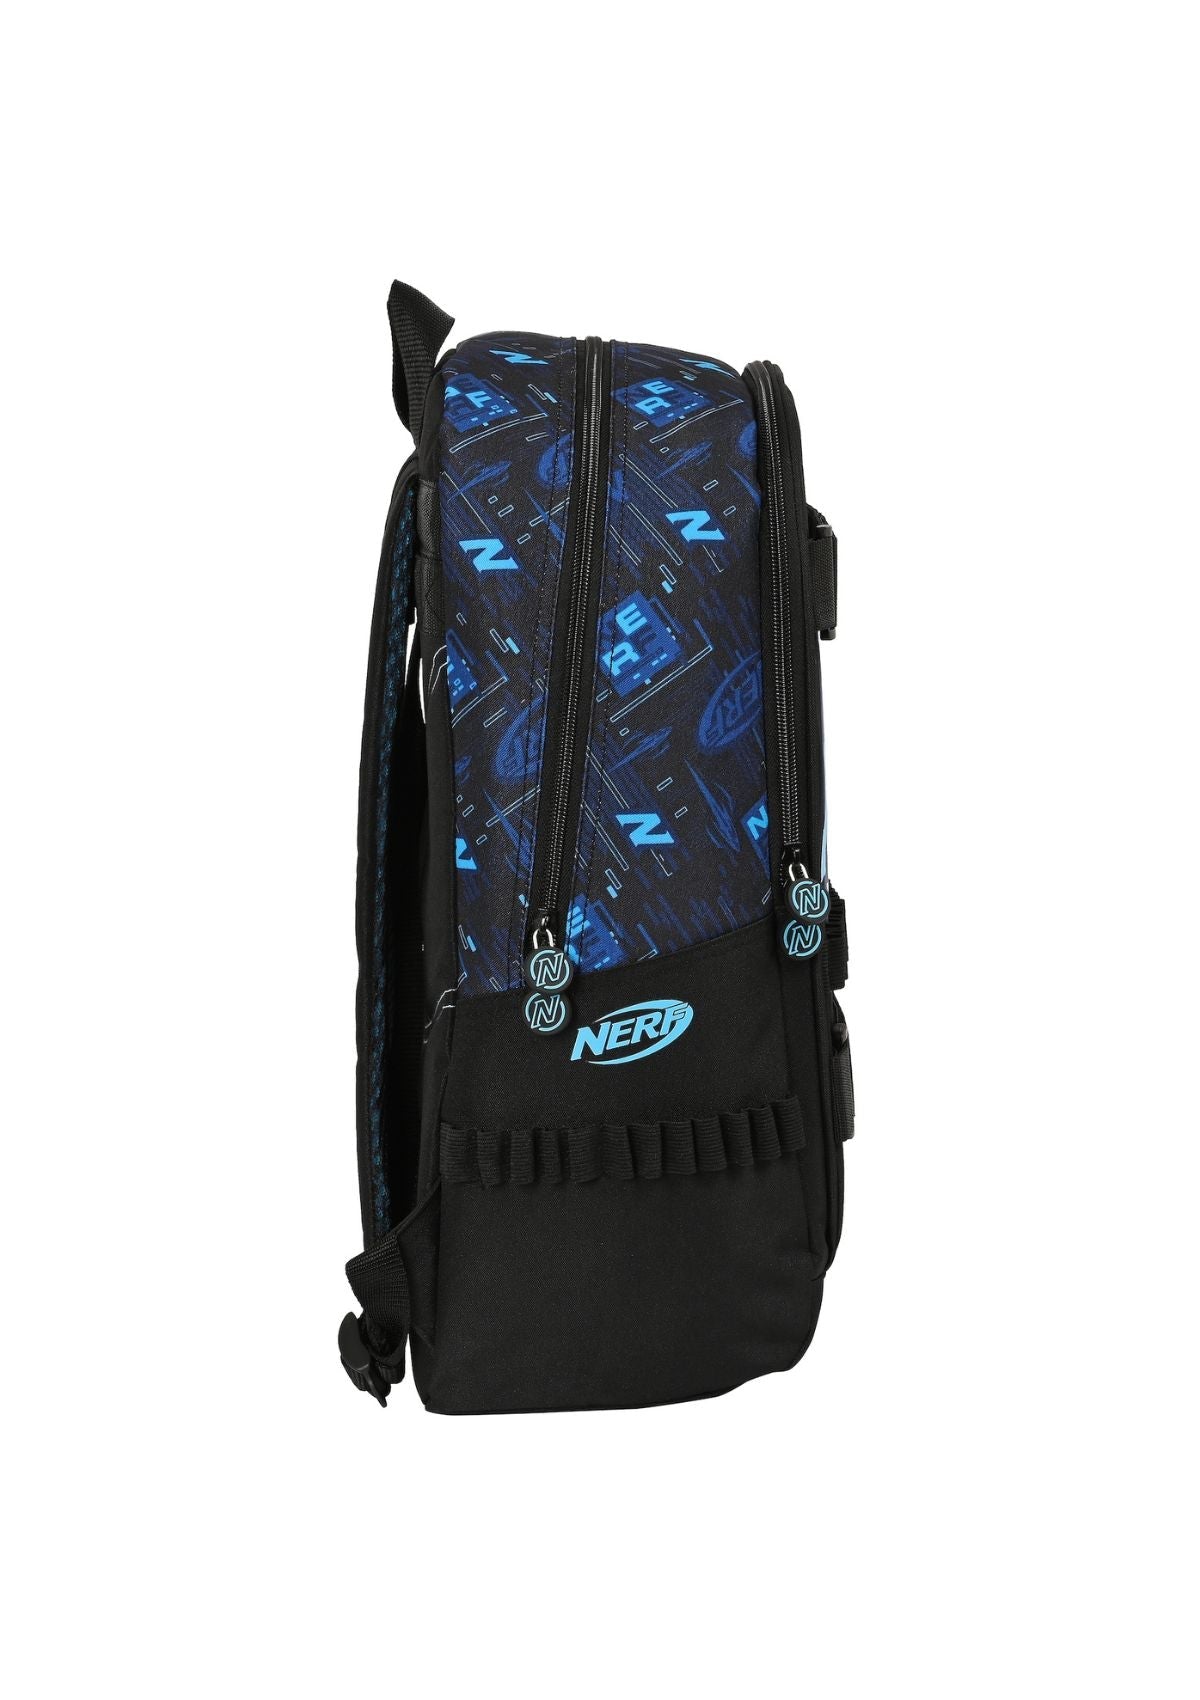 Nerf Large Backpack side